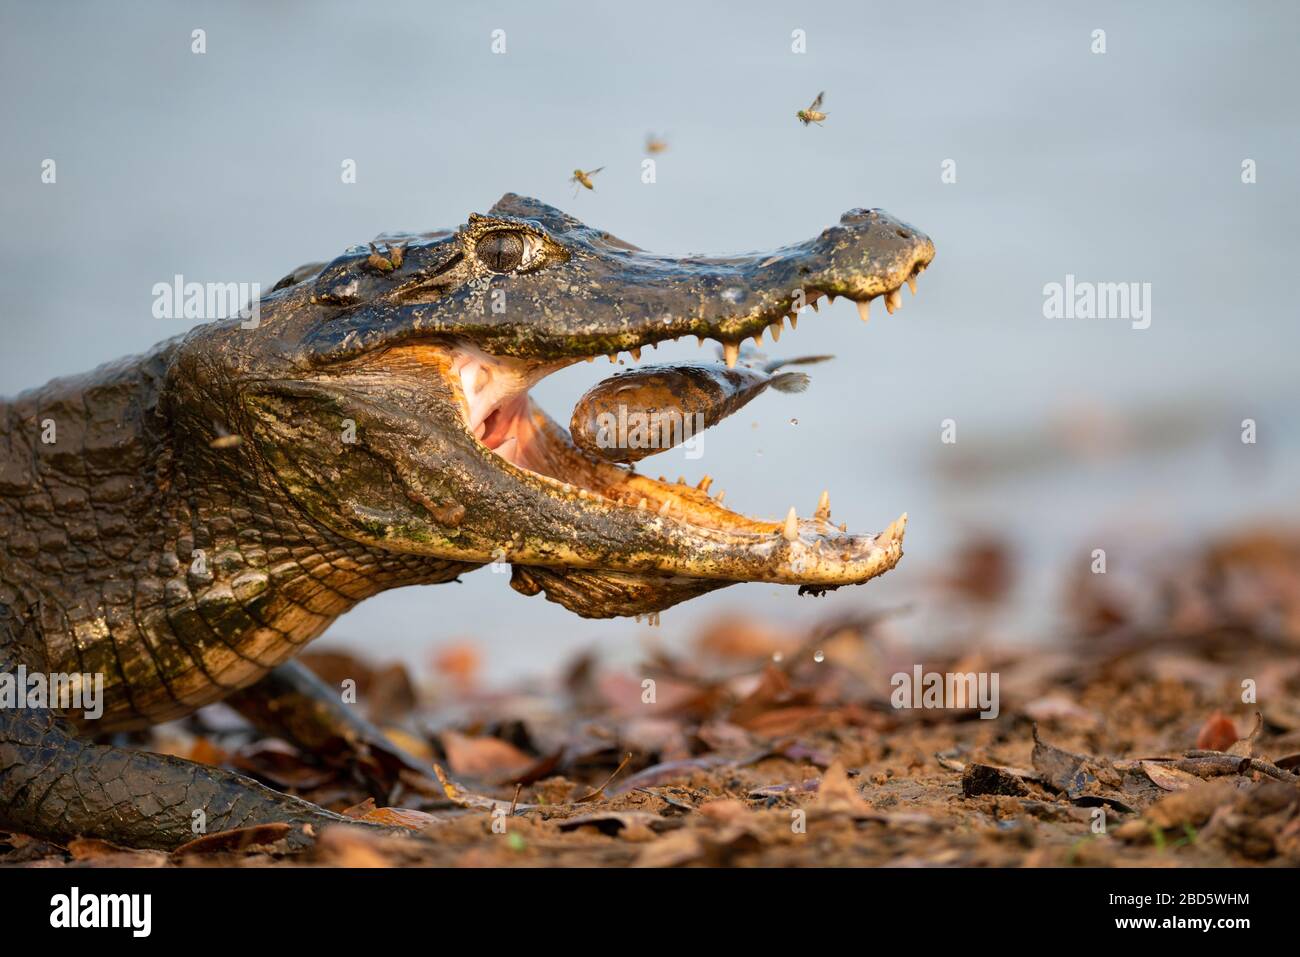 Pantanal Caiman eating a Piranha fish Stock Photo